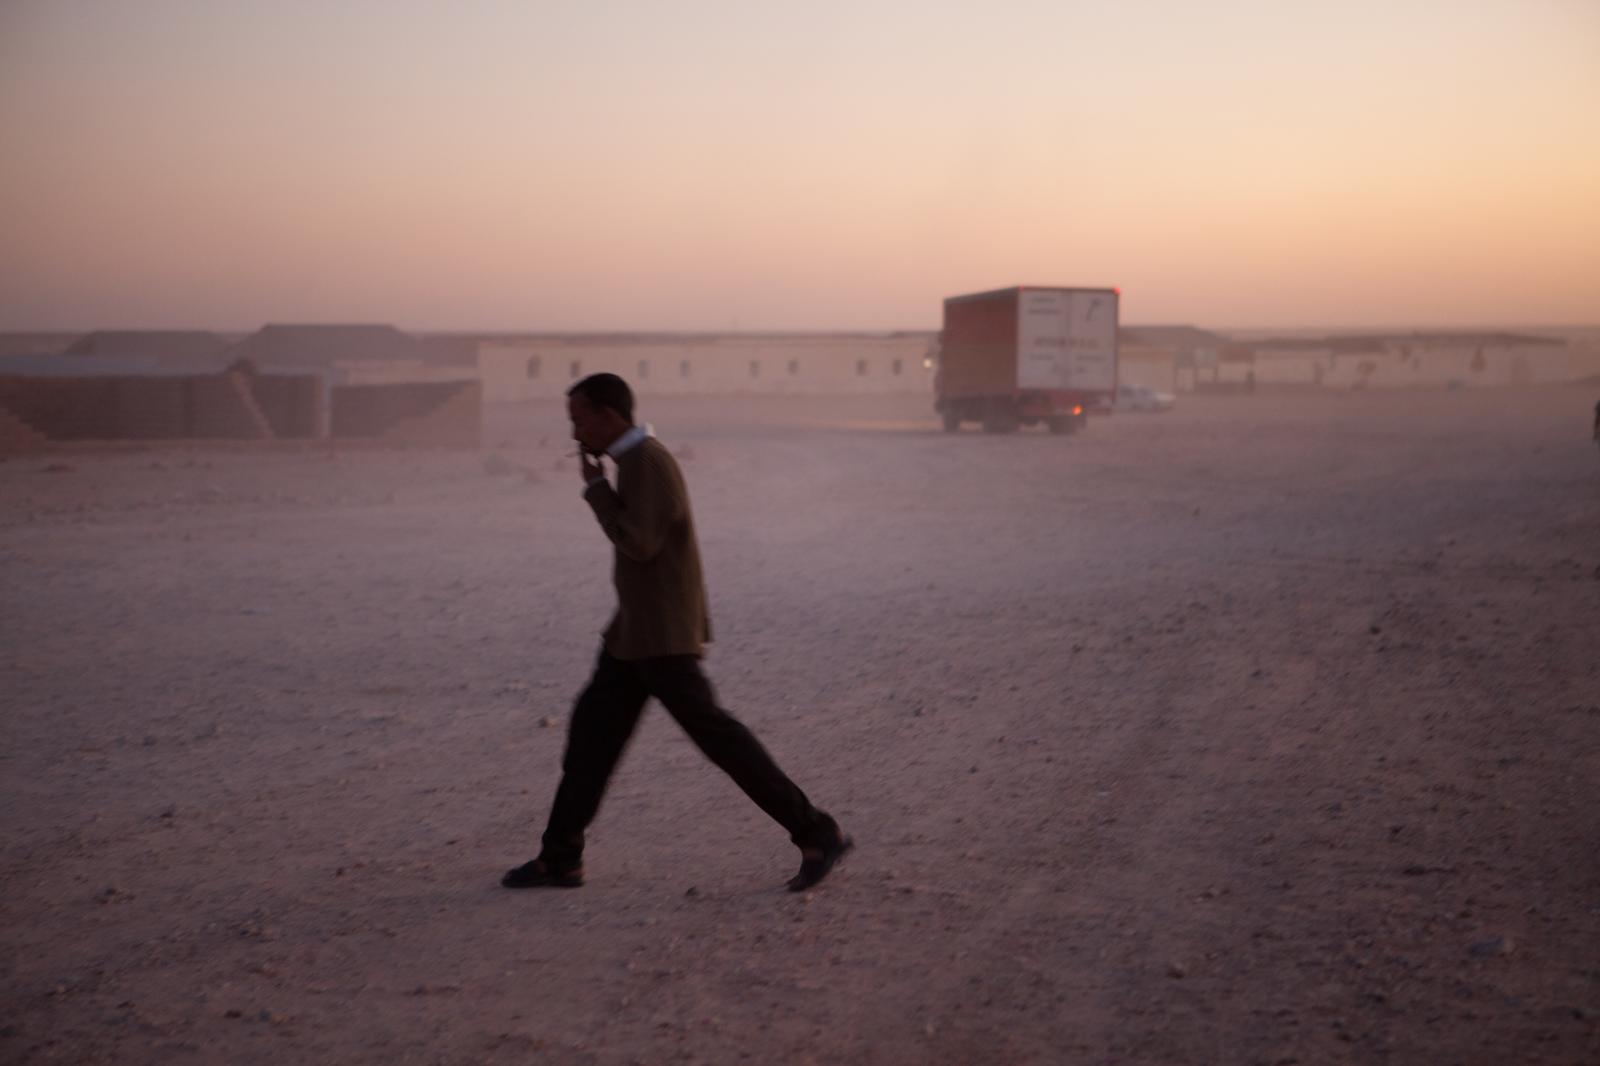 Sunset, Layounne refugee camp, Tindouf, Algeria.